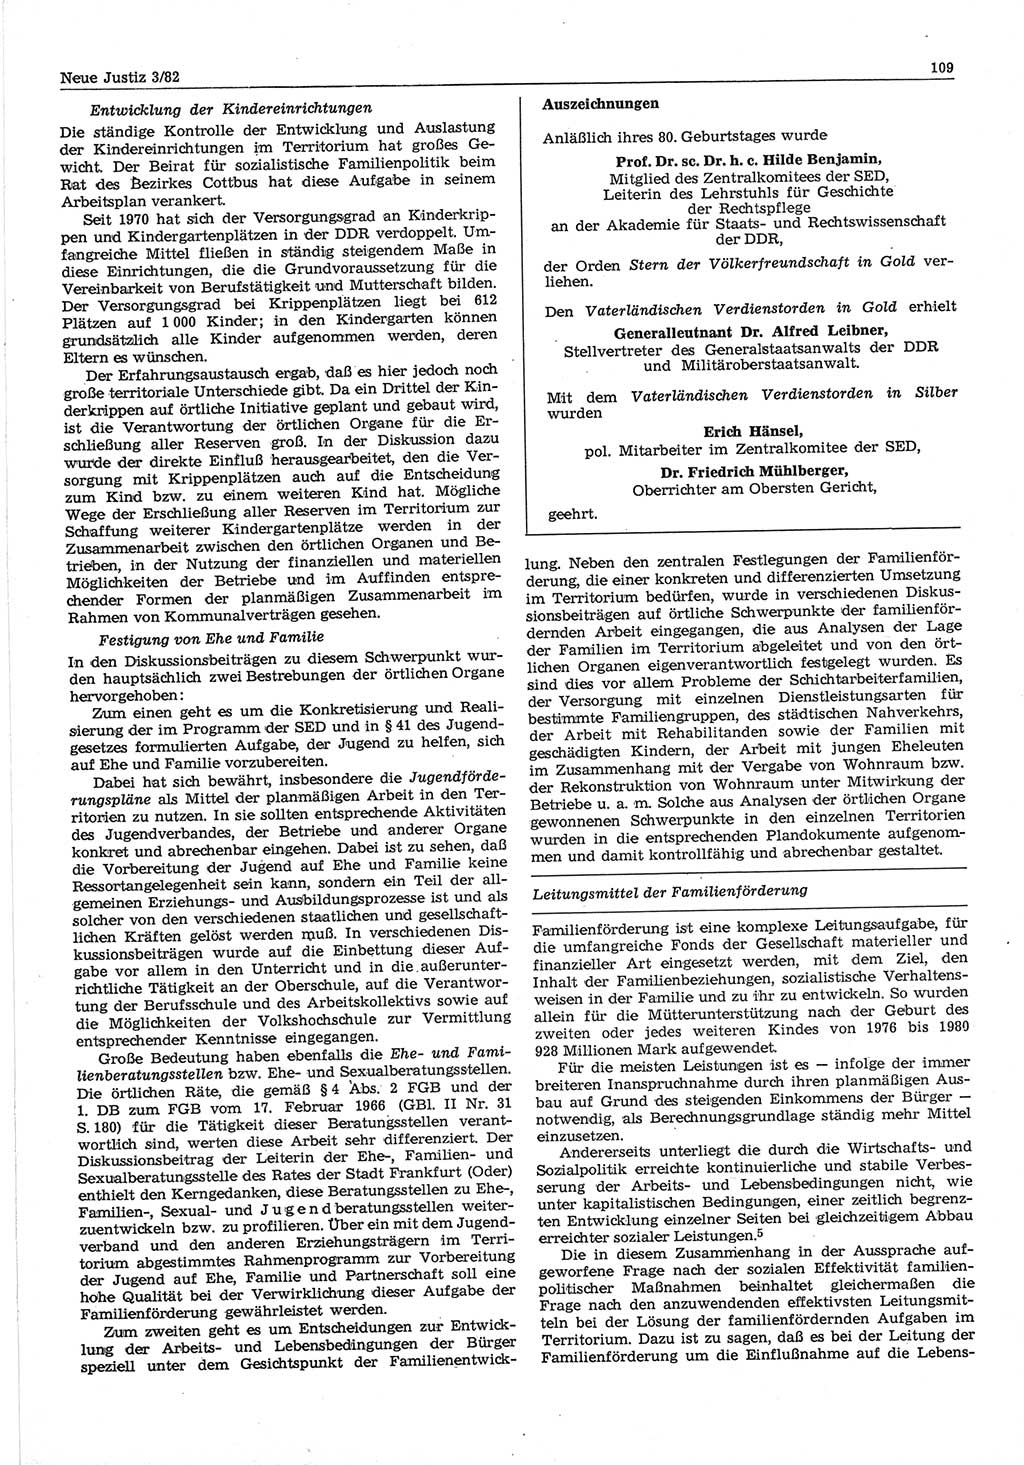 Neue Justiz (NJ), Zeitschrift für sozialistisches Recht und Gesetzlichkeit [Deutsche Demokratische Republik (DDR)], 36. Jahrgang 1982, Seite 109 (NJ DDR 1982, S. 109)